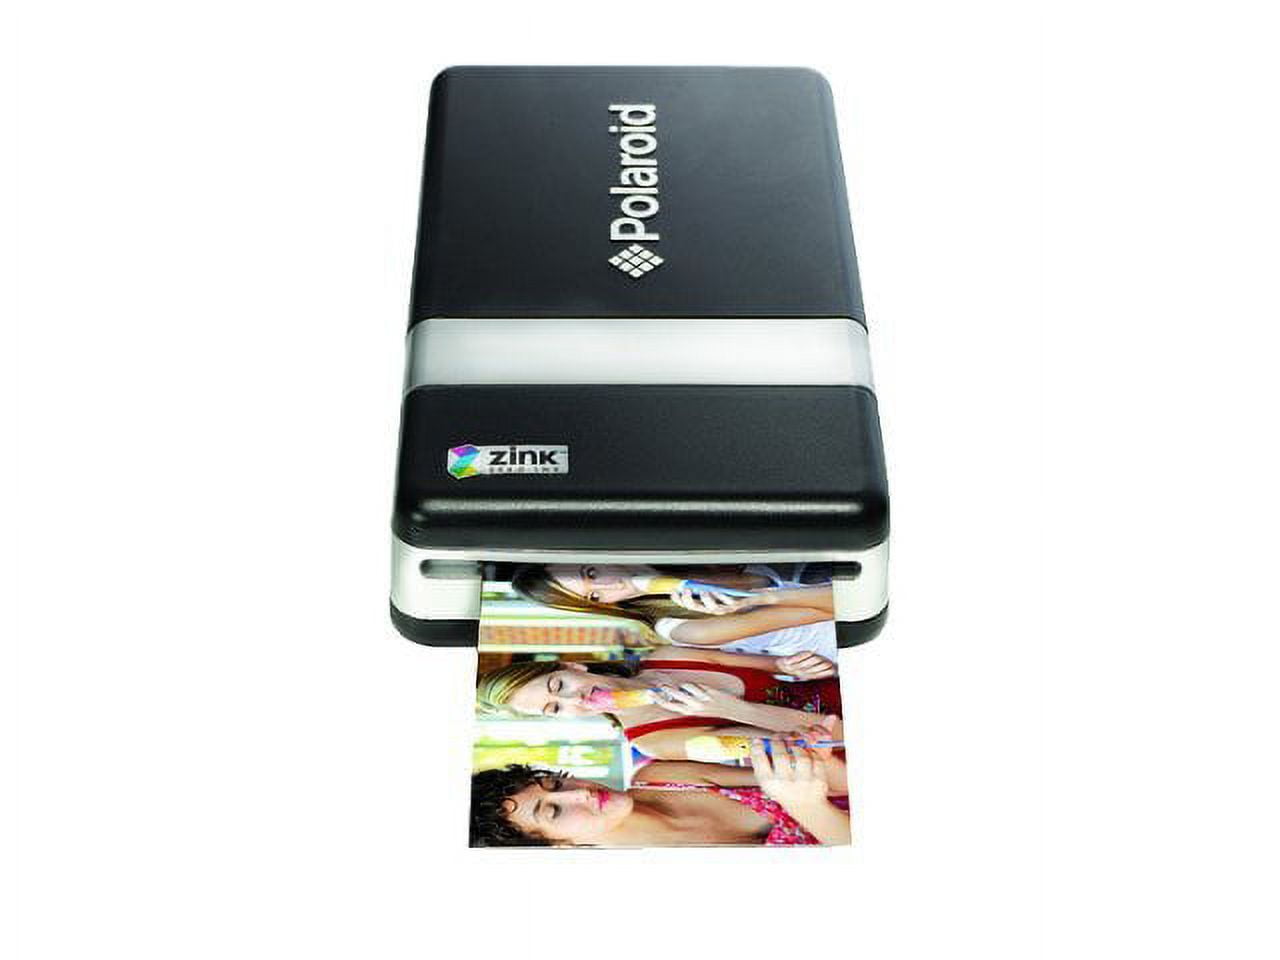 Polaroid, Cameras, Photo & Video, Polaroid Pogo Thermal Photo Portable  Printer